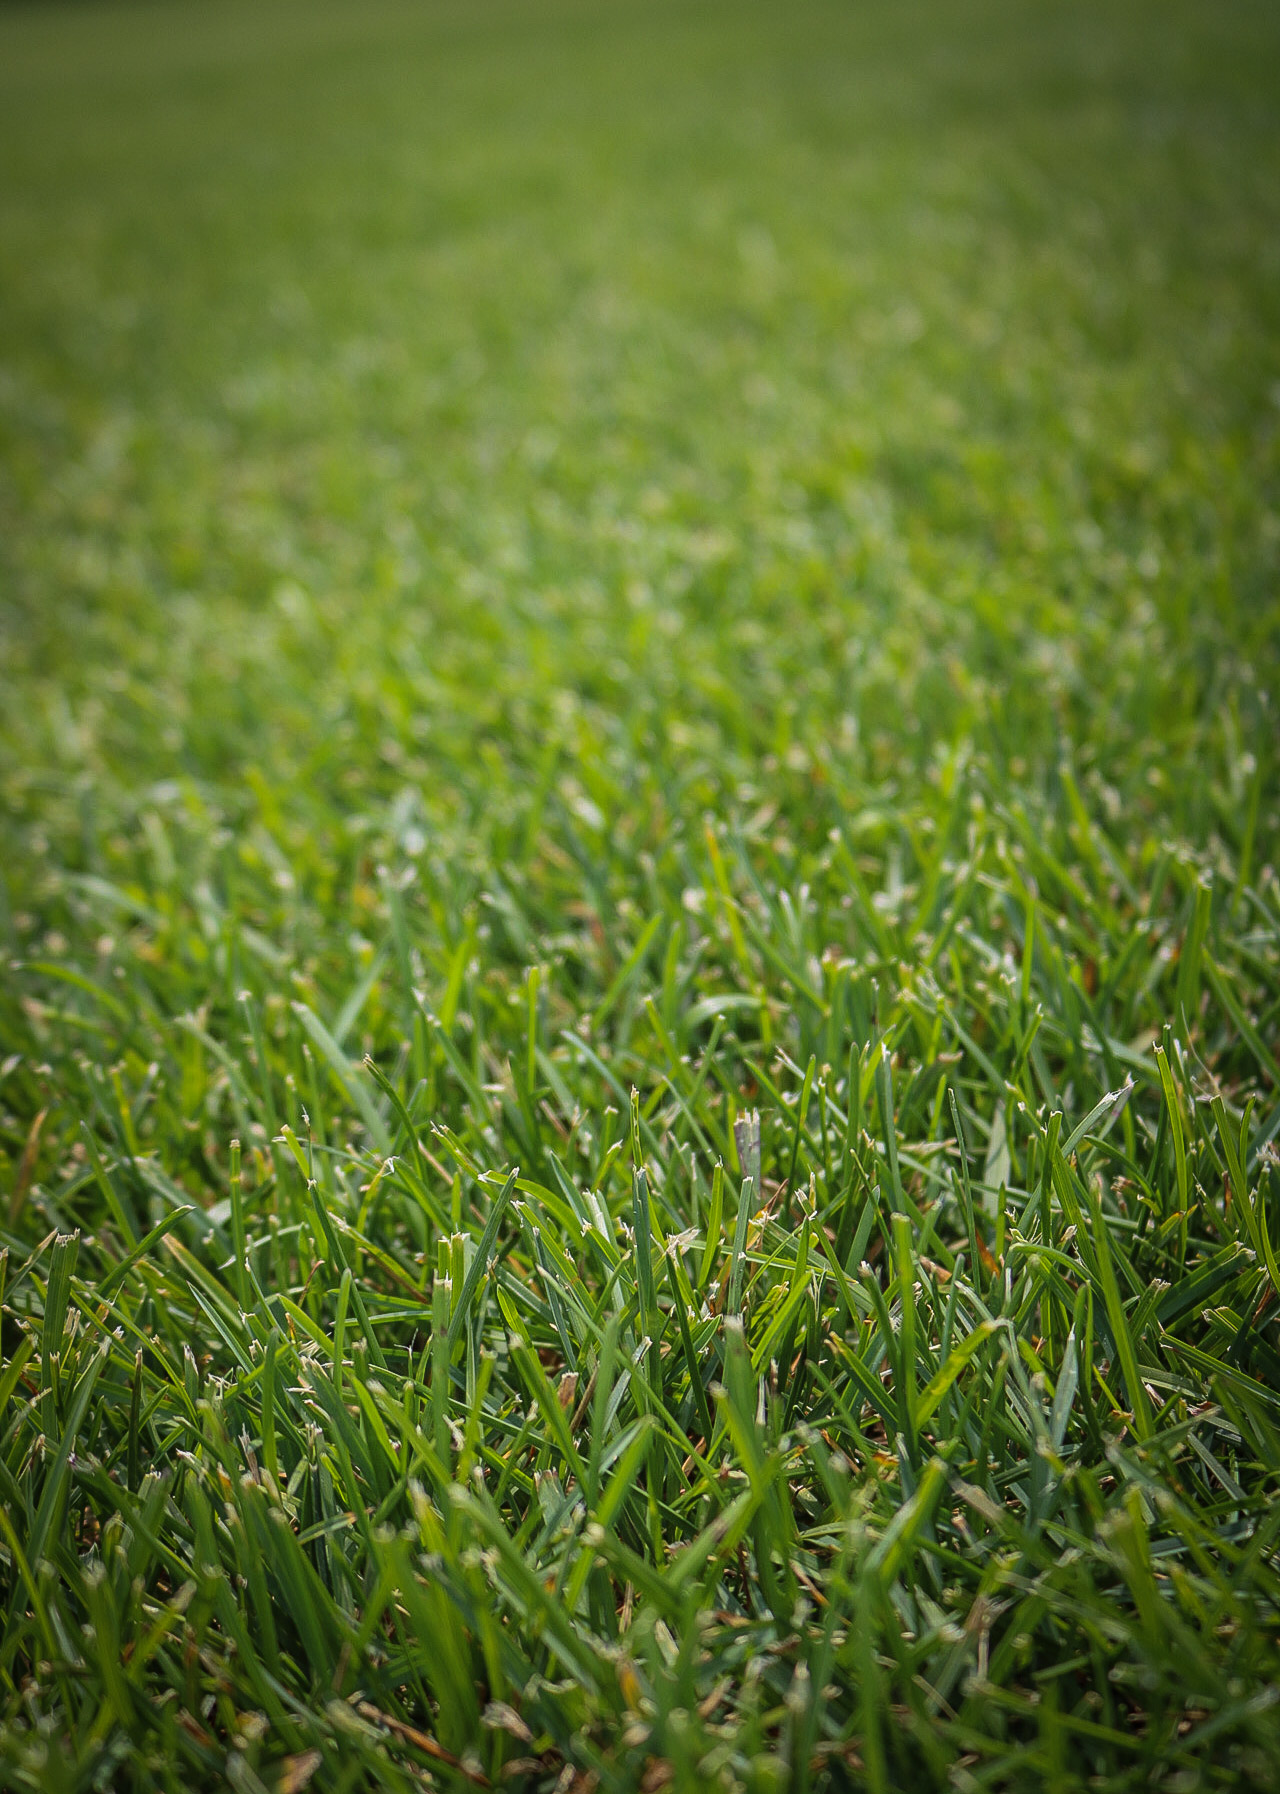 Cool-Season Grasses vs. Warm-Season Grasses: What’s the Difference? quantico creek sod